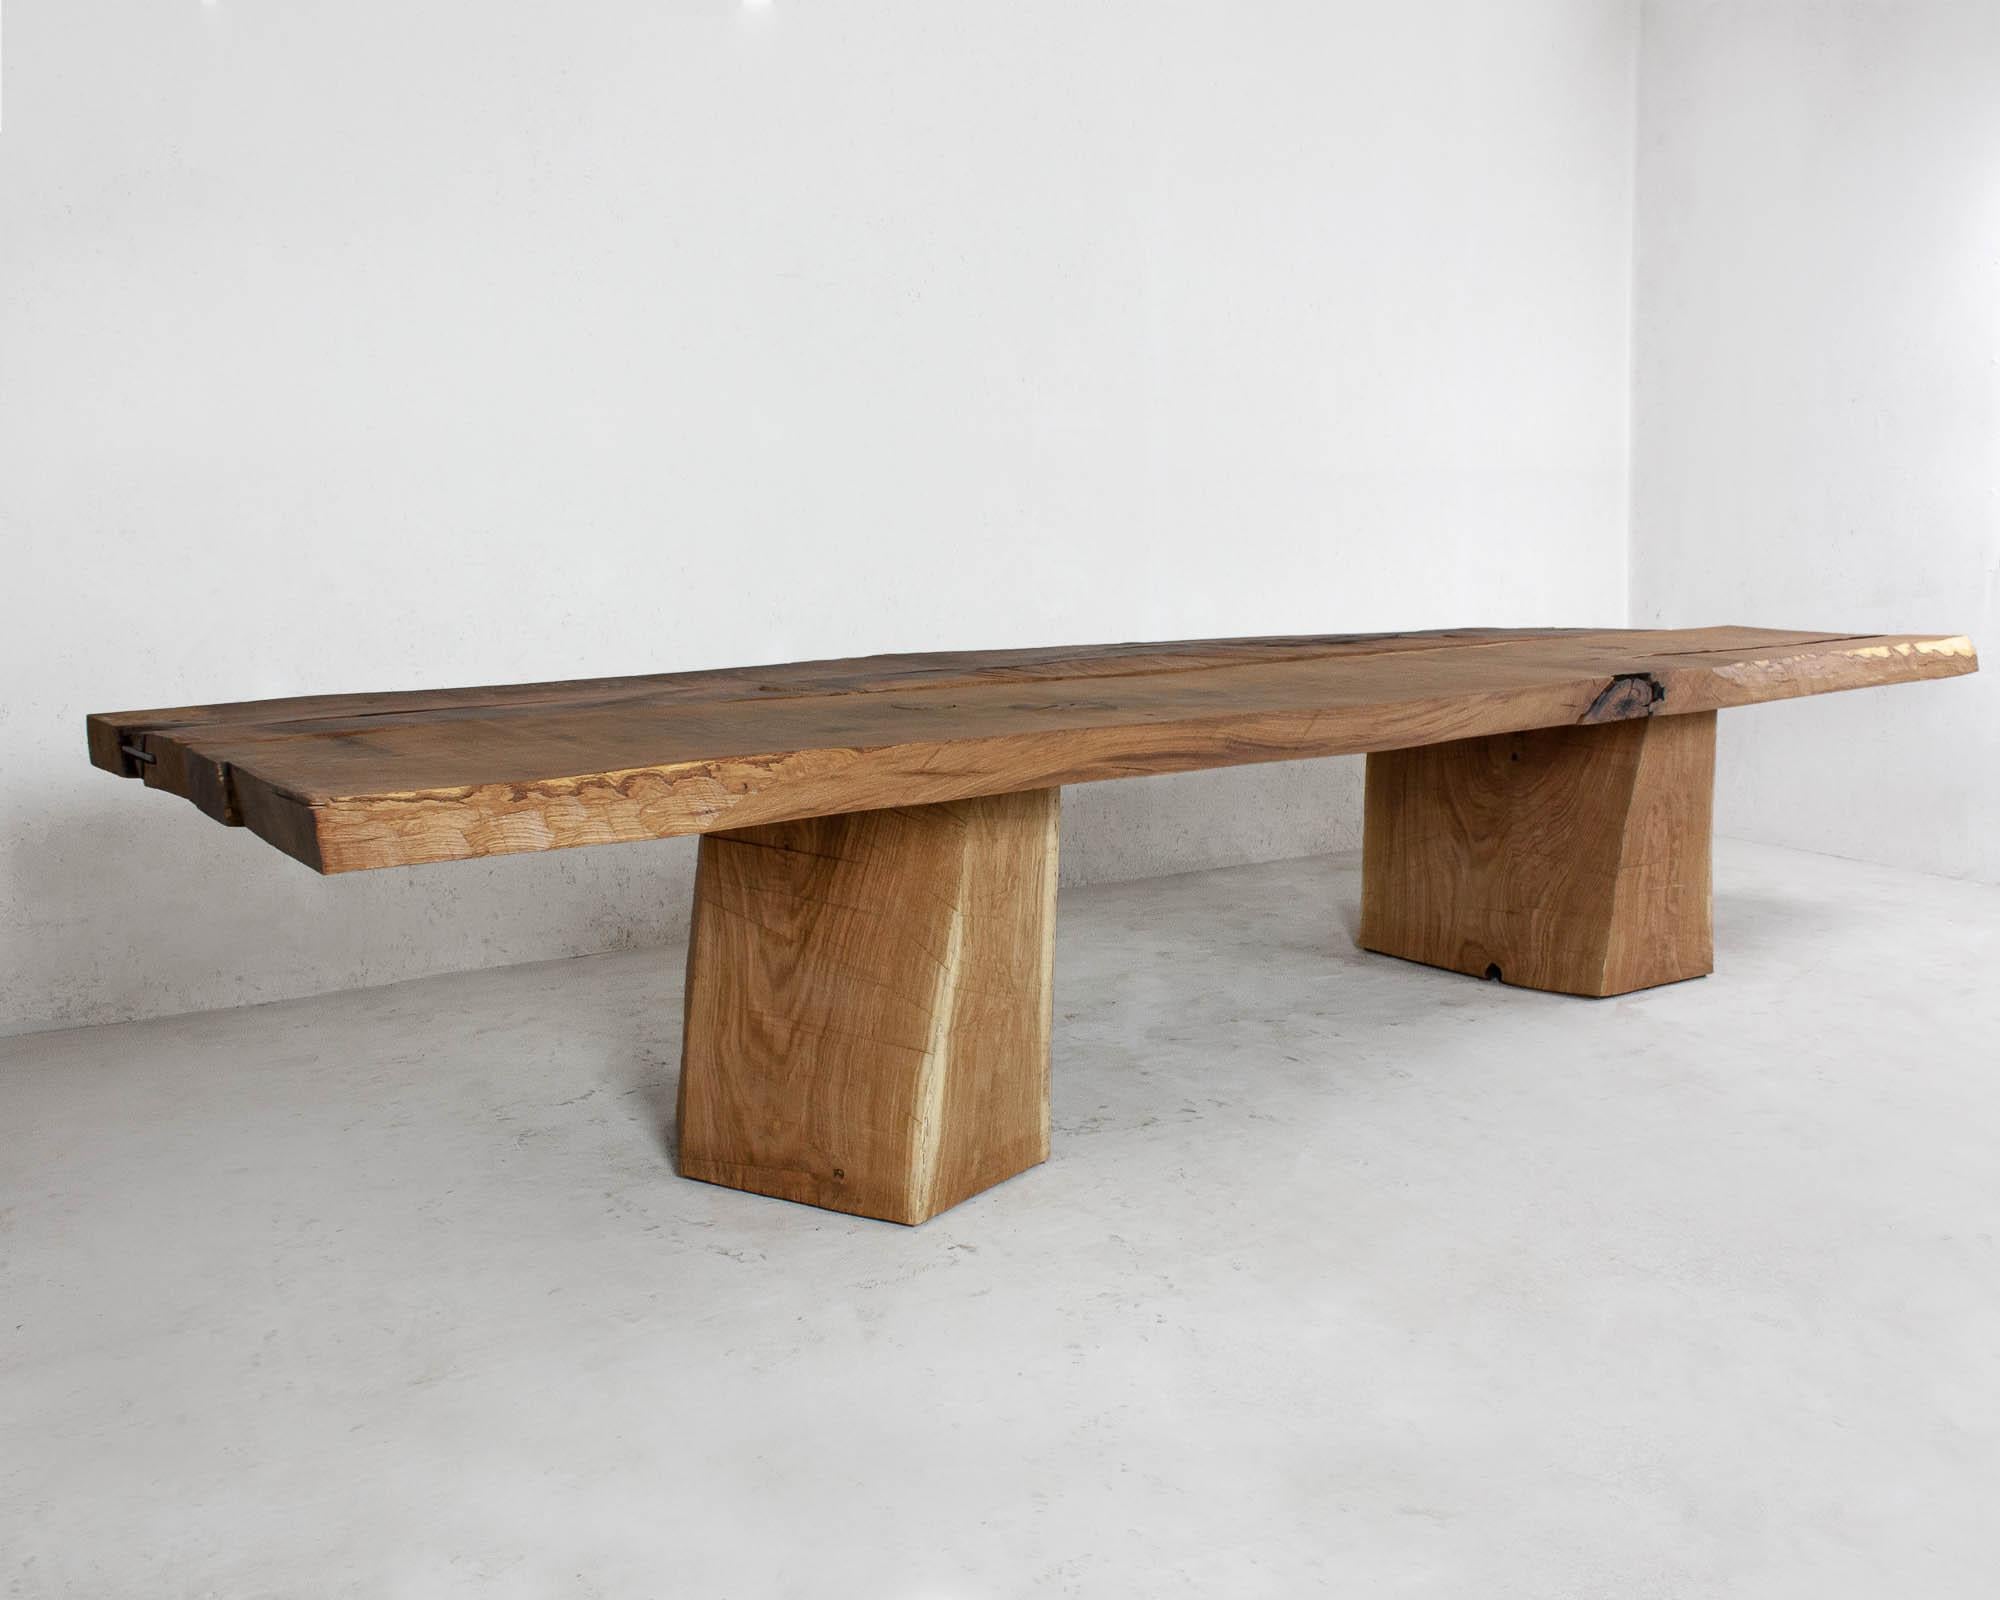 Massiver Esstisch aus massiver Eiche (+ Leinöl)
(Verwendung im Freien OK)


Warme Möbel des russischen Designers Denis Milovanov für das Studio 'Soha Concept'. Die Einfachheit der Formen. Authentisches MATERIAL.
Die Holzteile werden aus